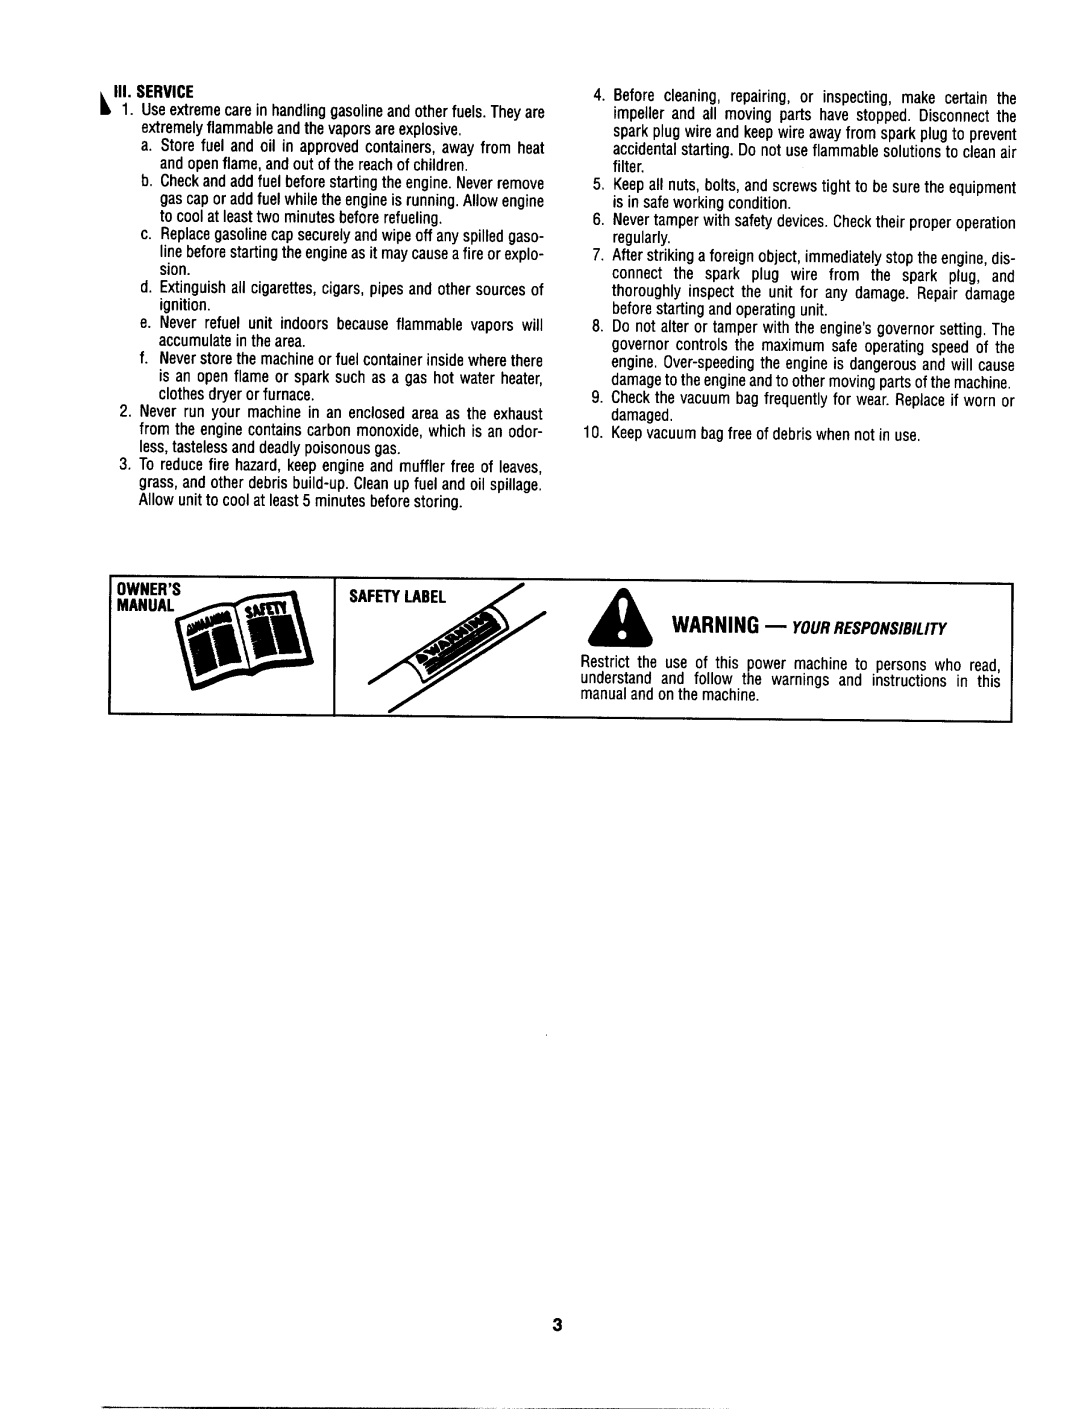 MTD 103A, 203b manual 